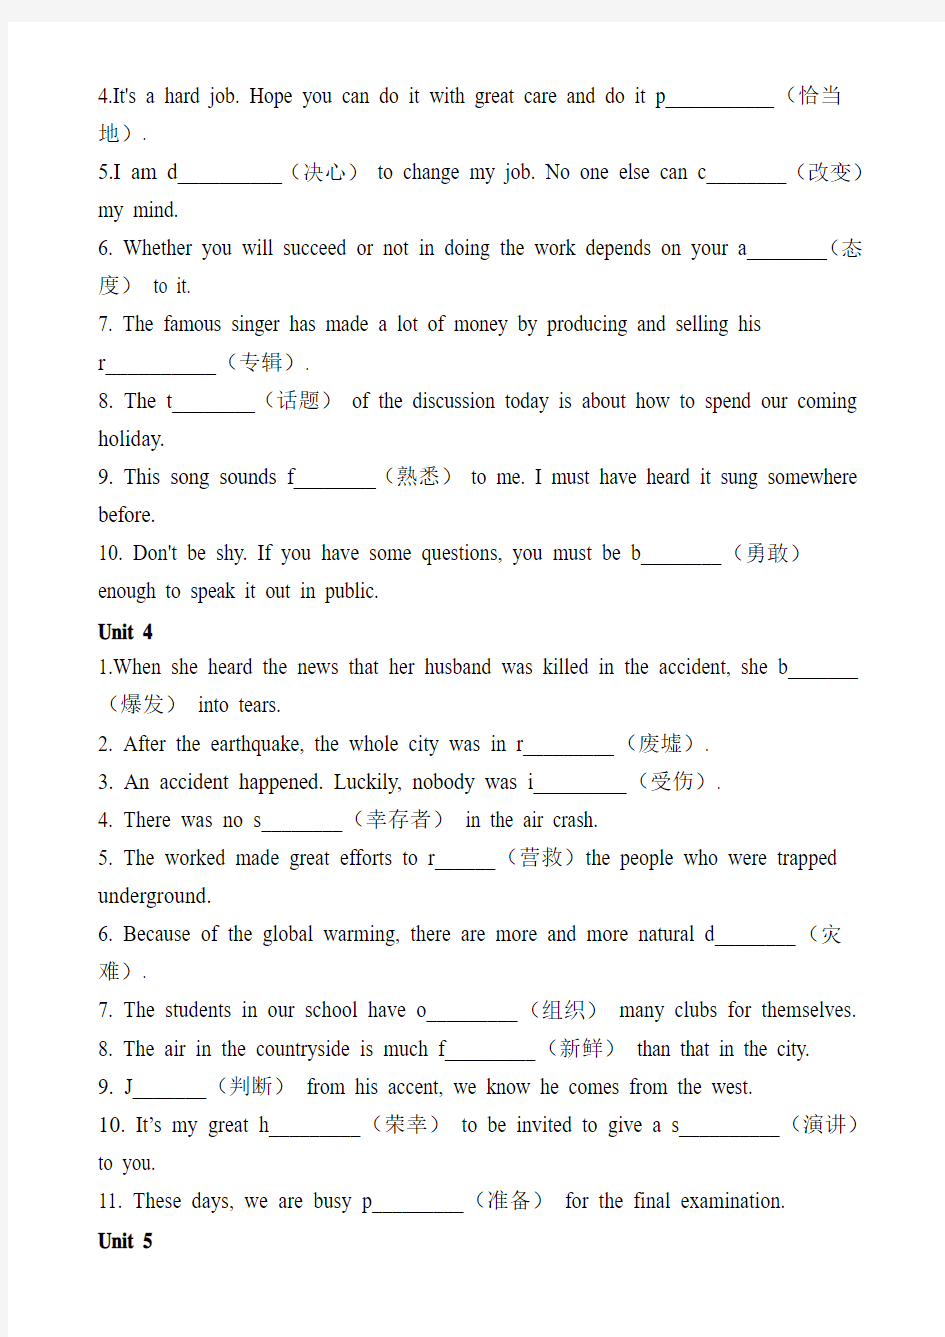 高中英语1-5单元单词拼写专项练习